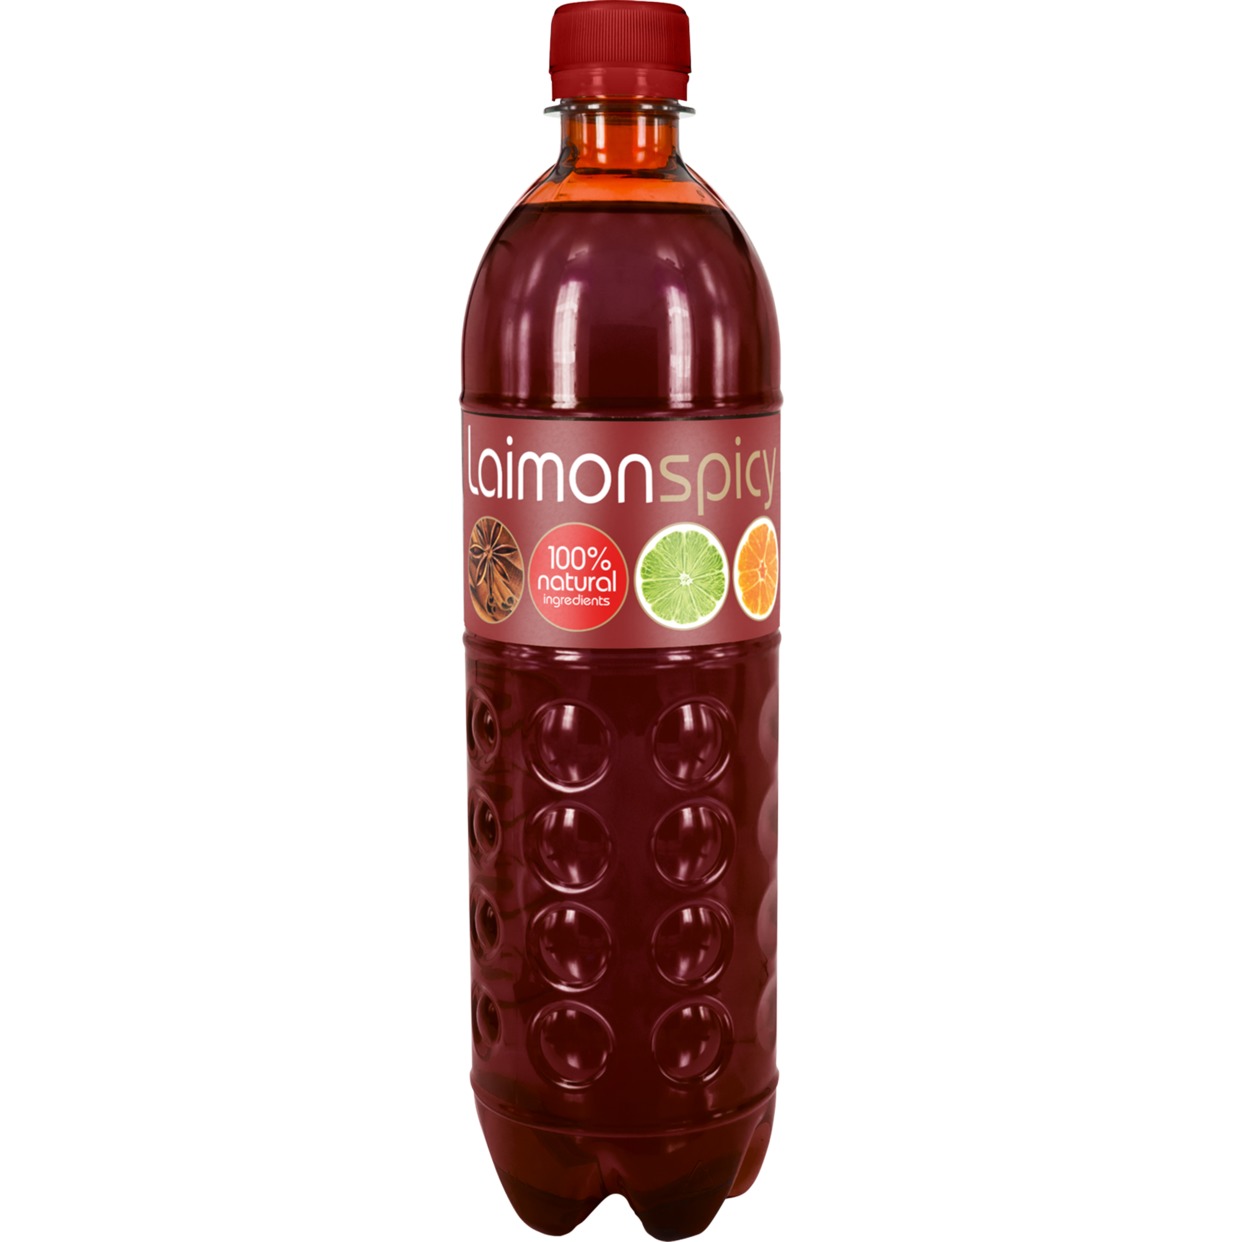 Напиток безалкогольный среднегазированный "Лаймон спайси (Laimon spicy)" 0,5л по акции в Пятерочке